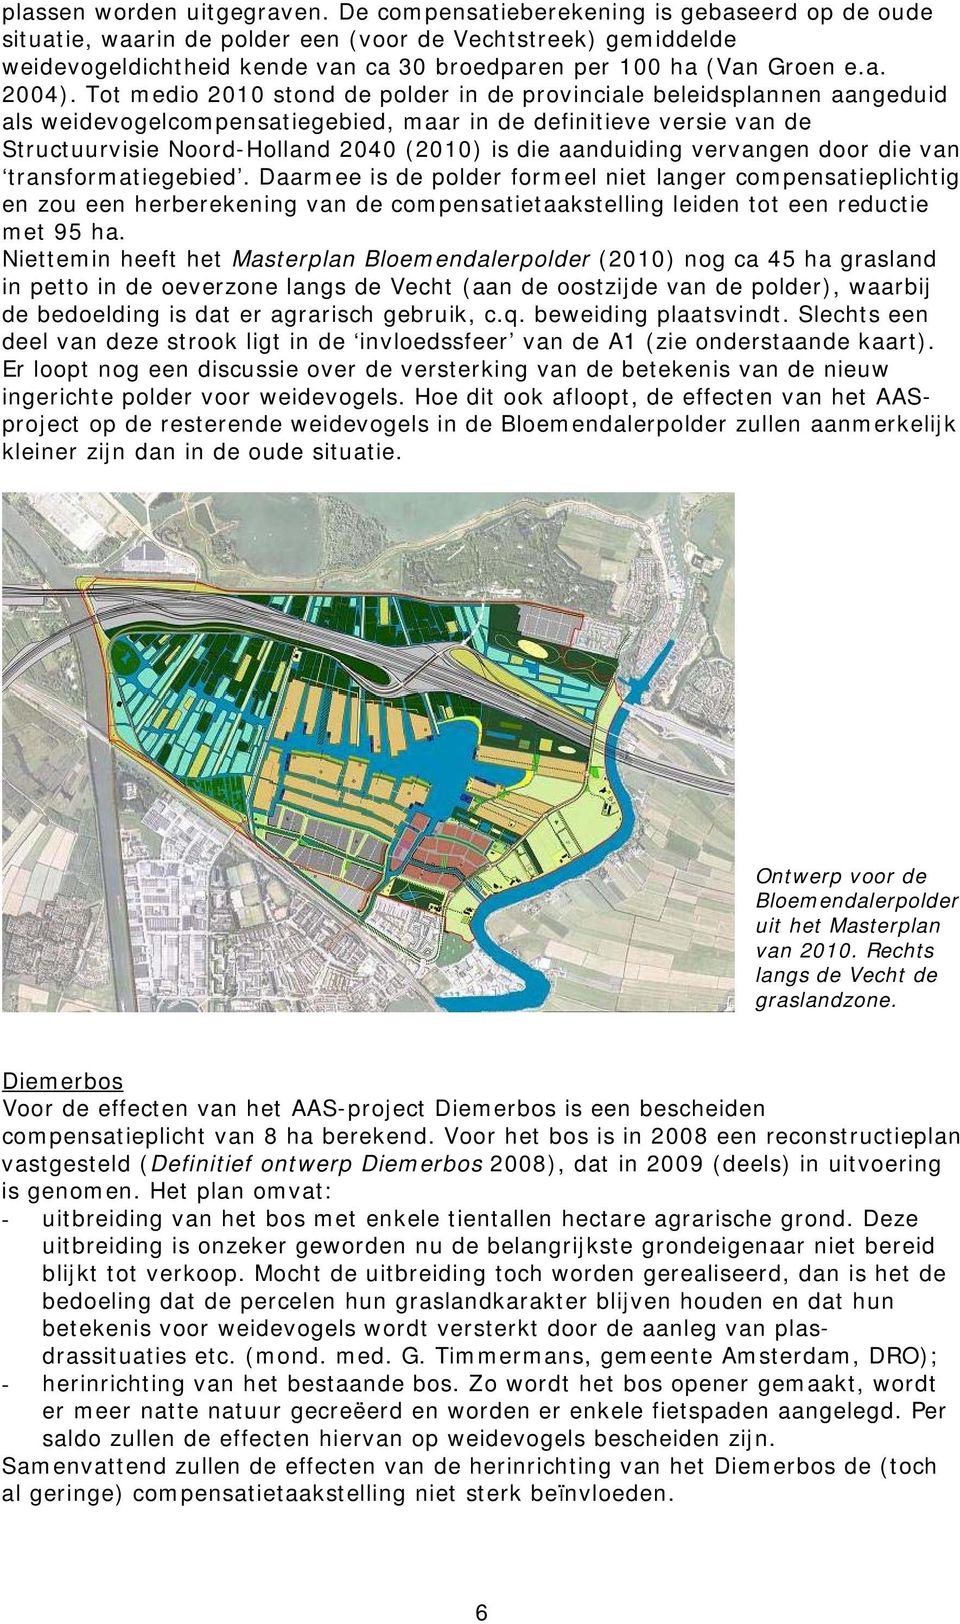 Tot medio 2010 stond de polder in de provinciale beleidsplannen aangeduid als weidevogelcompensatiegebied, maar in de definitieve versie van de Structuurvisie Noord-Holland 2040 (2010) is die